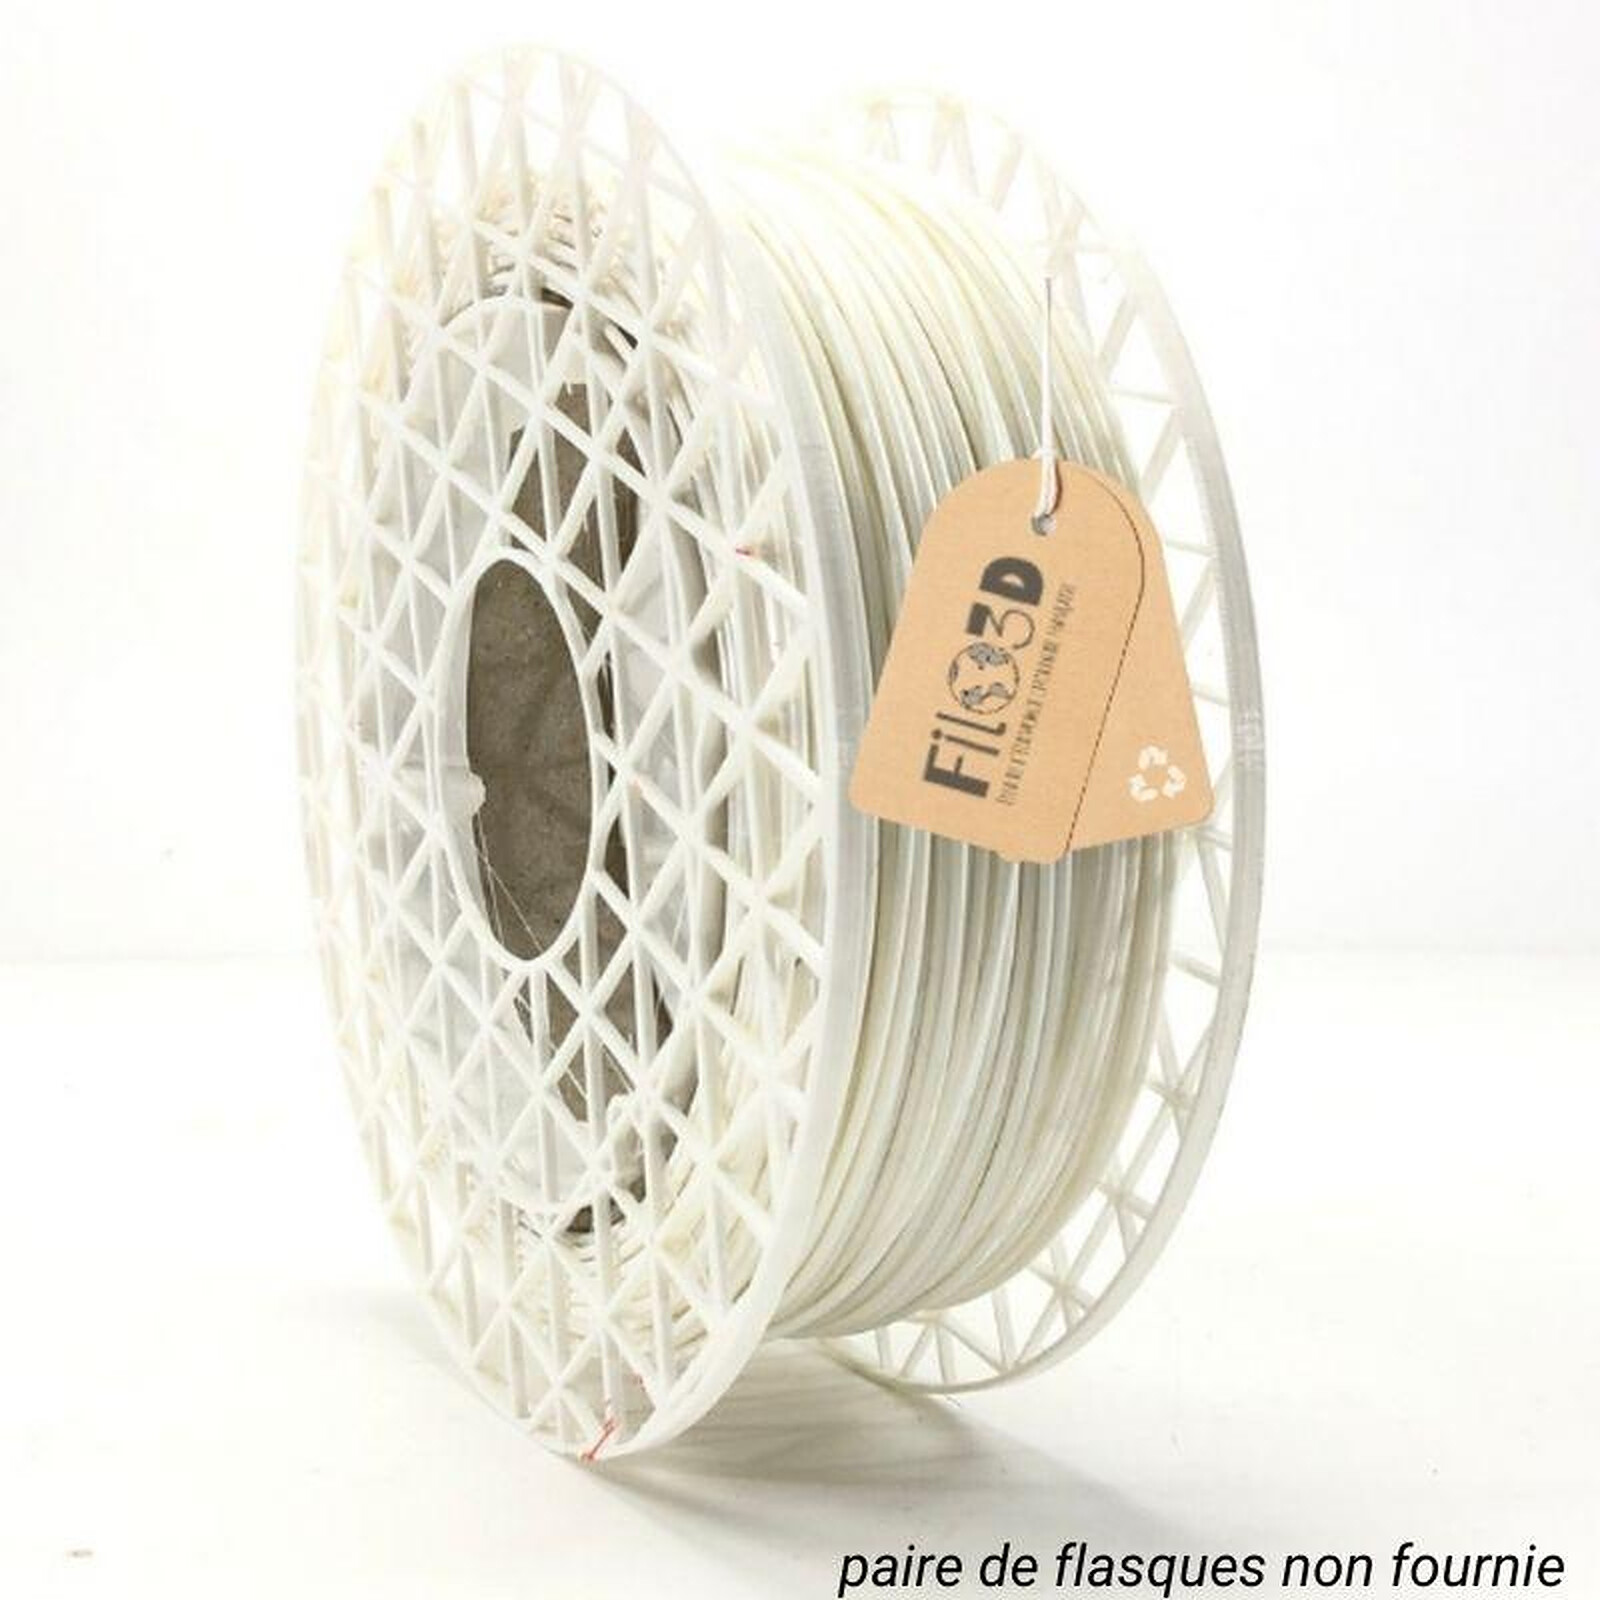 ECOFIL3D Bobine PLA 1.75mm 1 Kg - Rouge - Filament 3D - LDLC